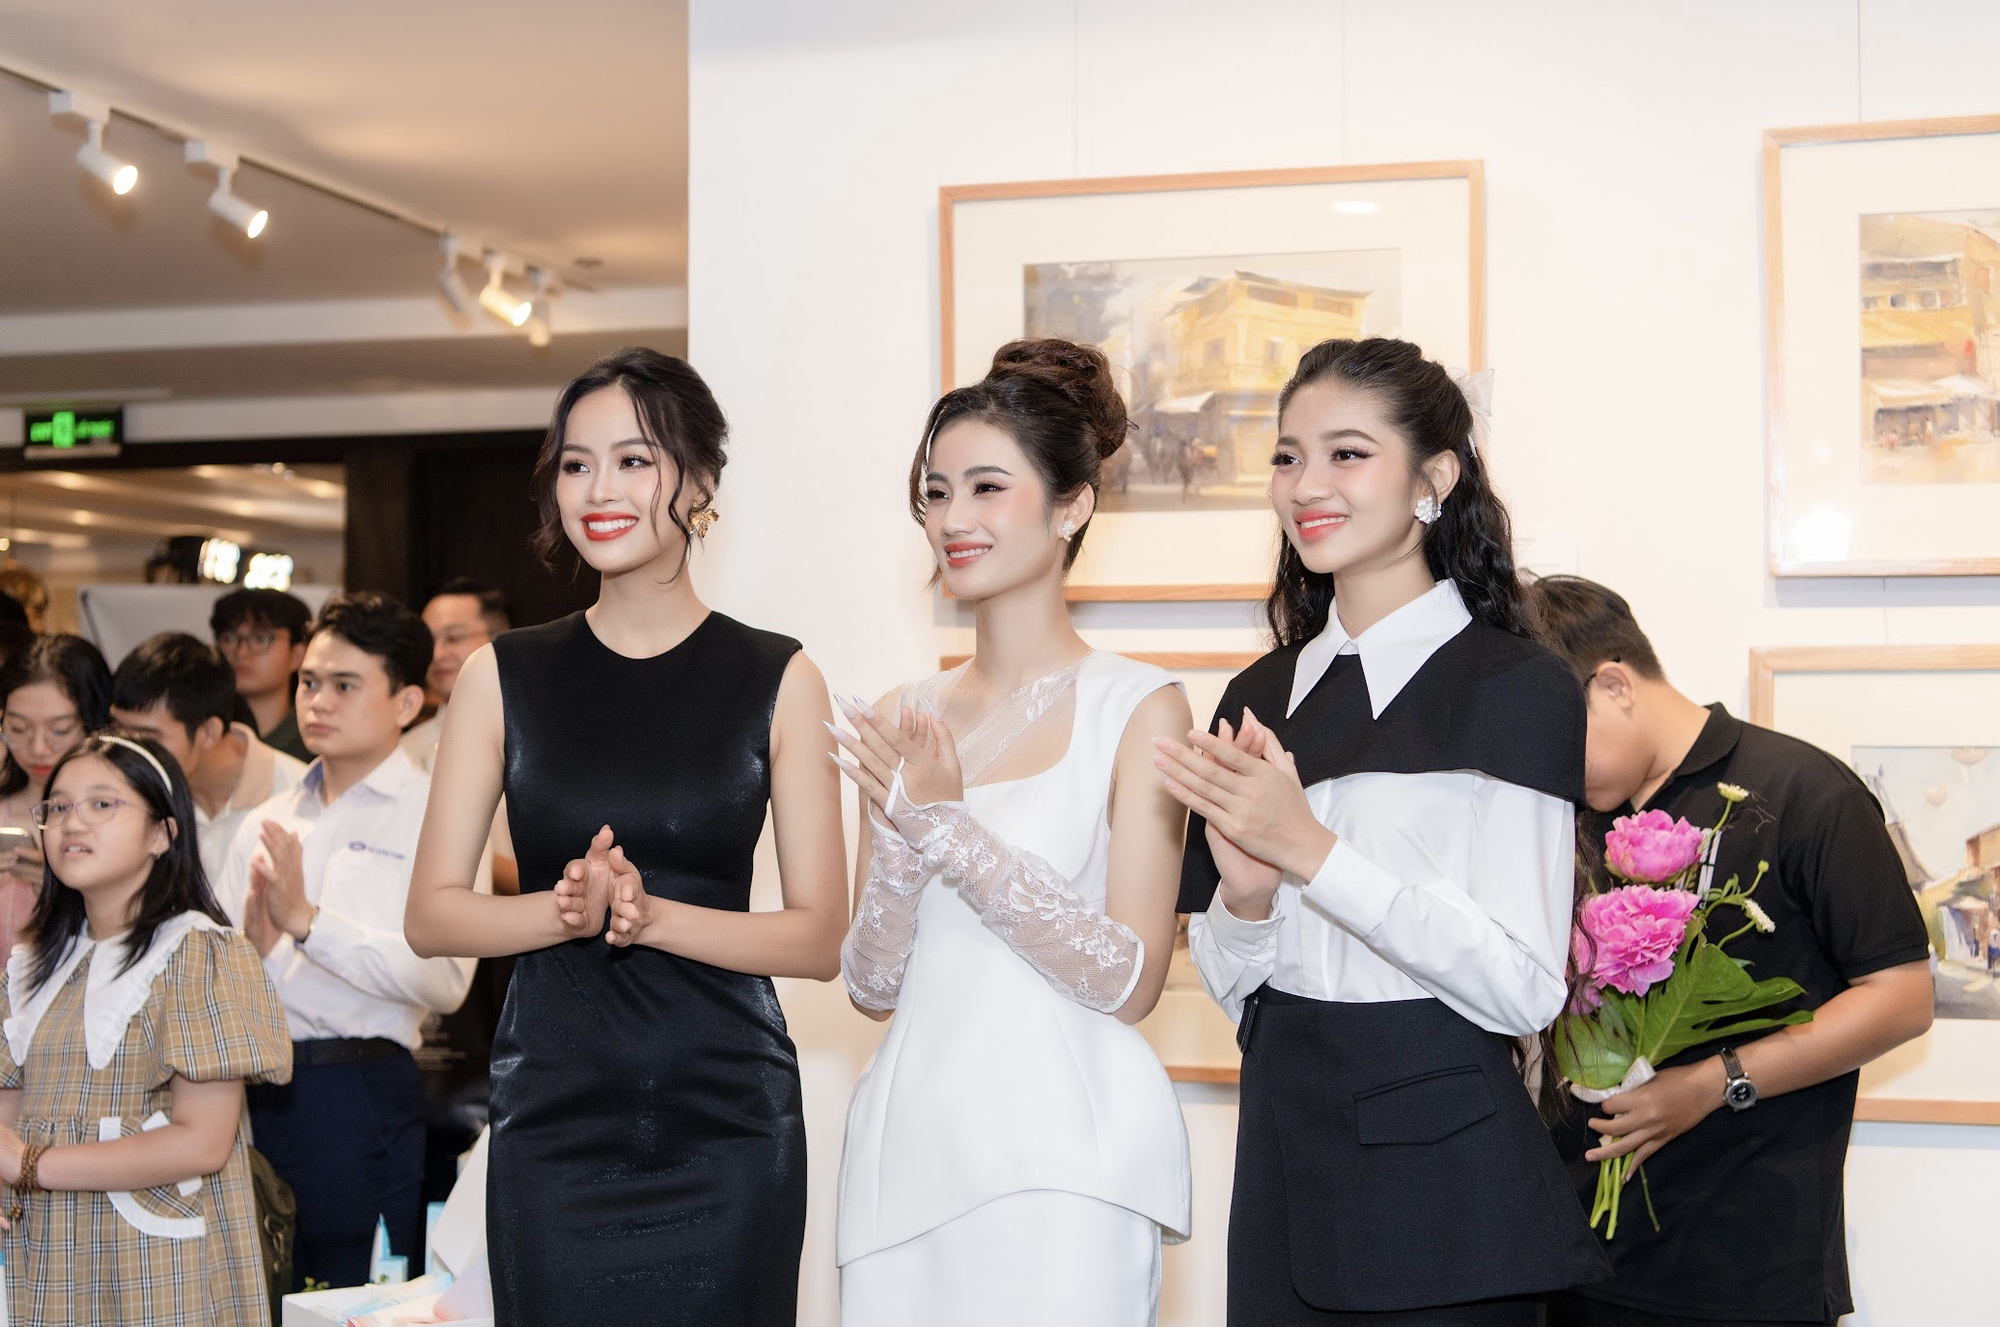 Hoa hậu Ý Nhi đồng hành cùng triển lãm tranh thiện nguyện của hoạ sĩ trẻ Phan Anh Thư  - Ảnh 2.